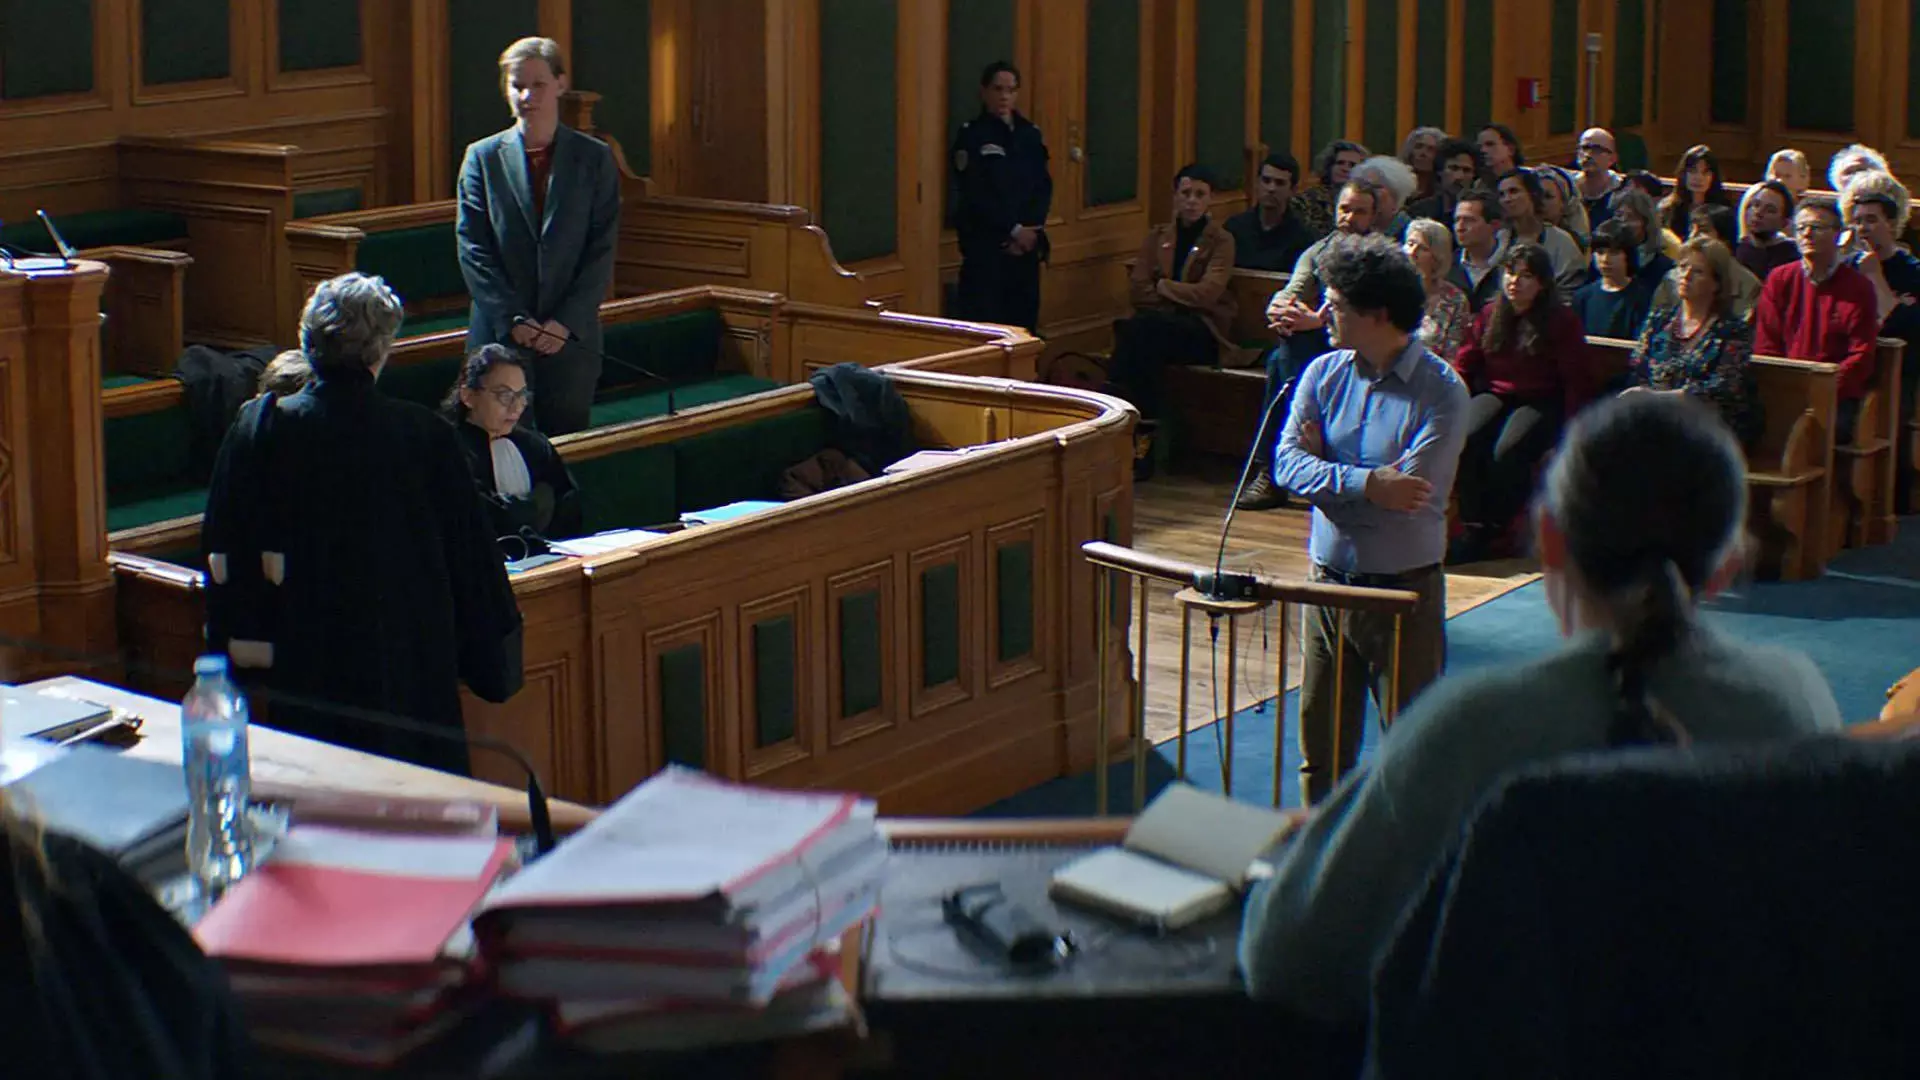 نمایی از یک دادگاه در فیلم آناتومی یک سقوط به کارگردانی ژوستین تریه